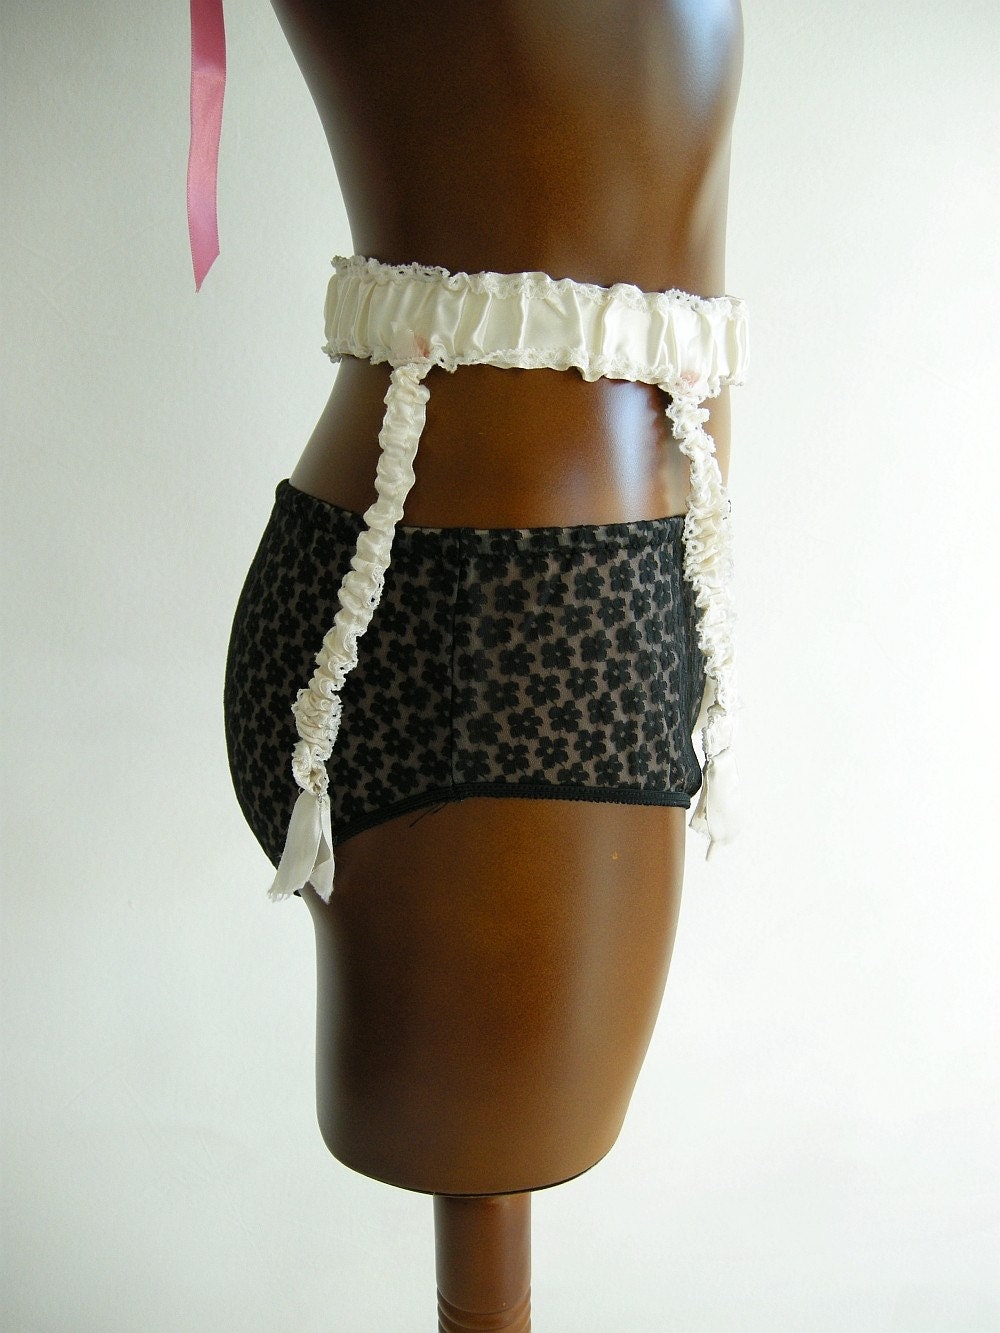 Ivory Satin Vintage Garter Belt S M by empressjade on Etsy lingerie